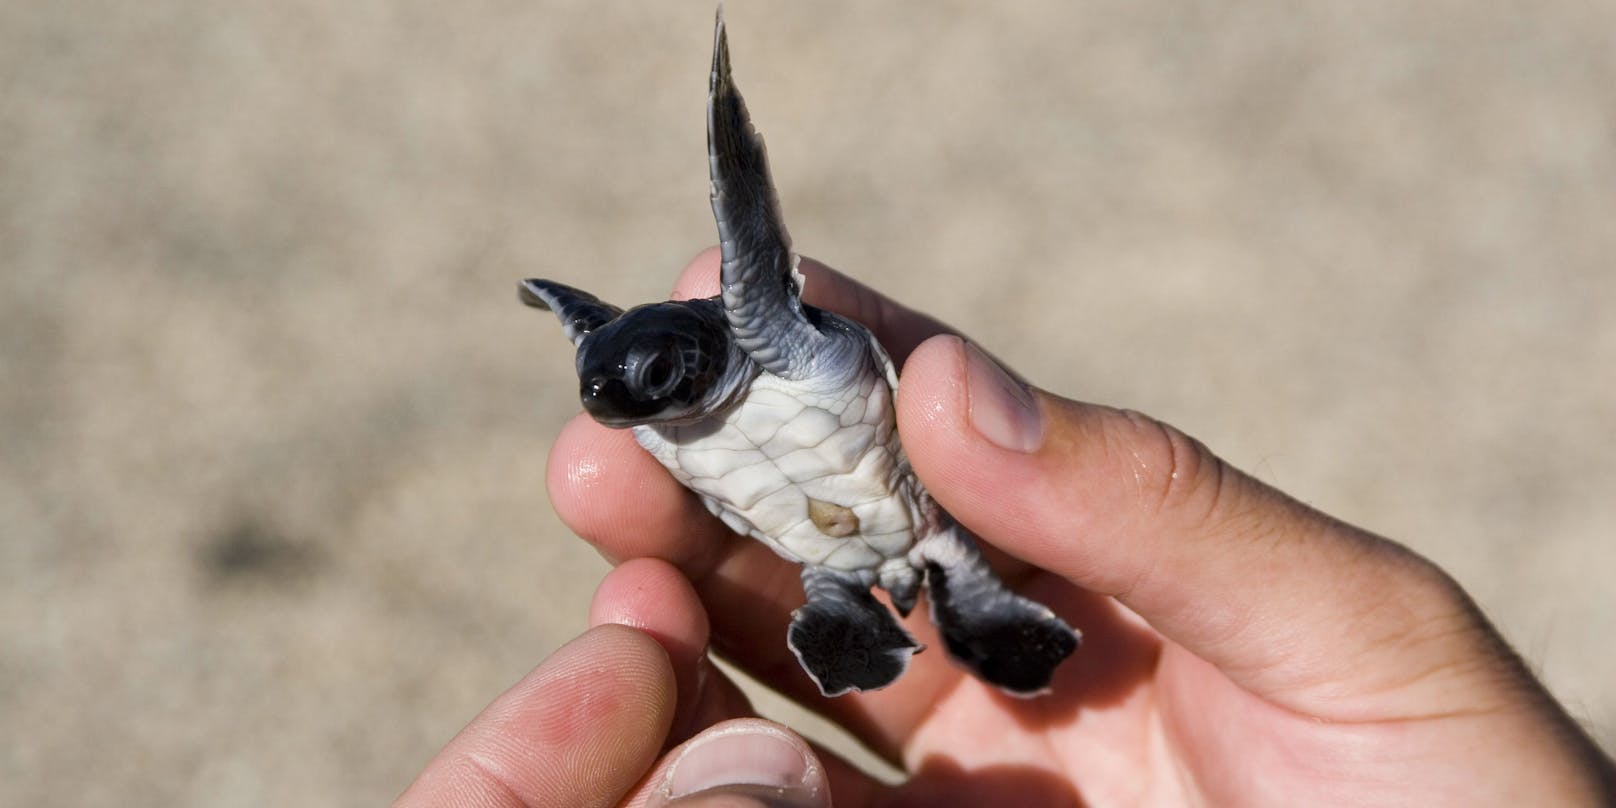 Flughafenmitarbeiter auf den Galápagos-Inseln haben in einem Koffer rund 185 neugeborene Schildkröten entdeckt (Symbolfoto)